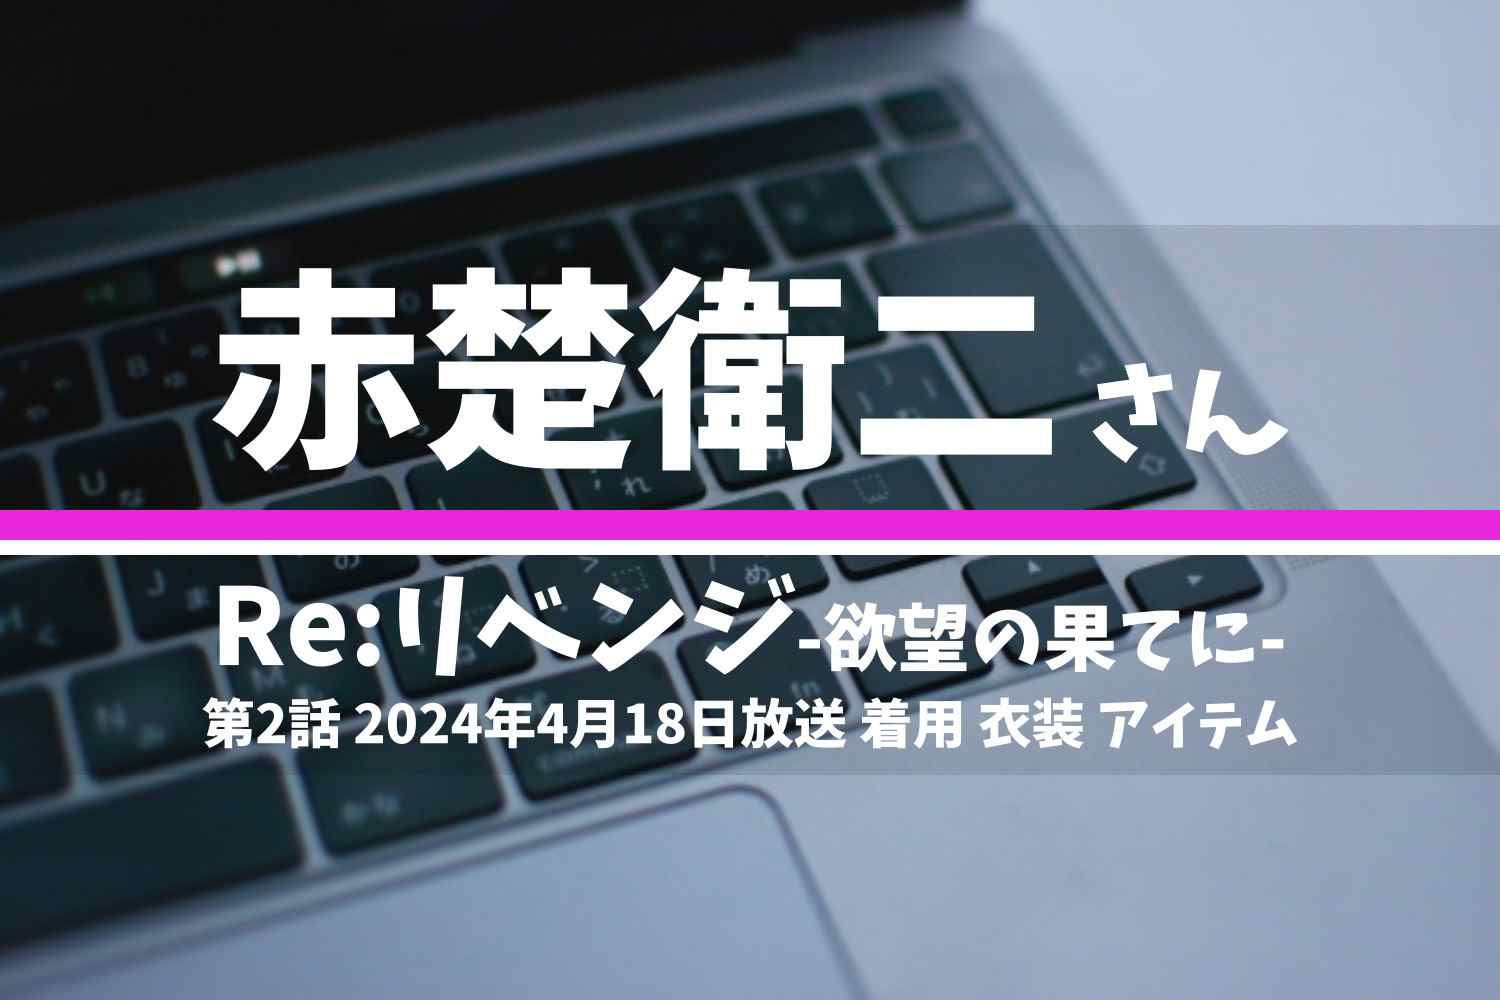 Re:リベンジ-欲望の果てに- 赤楚衛二さん テレビドラマ 衣装 2024年4月18日放送